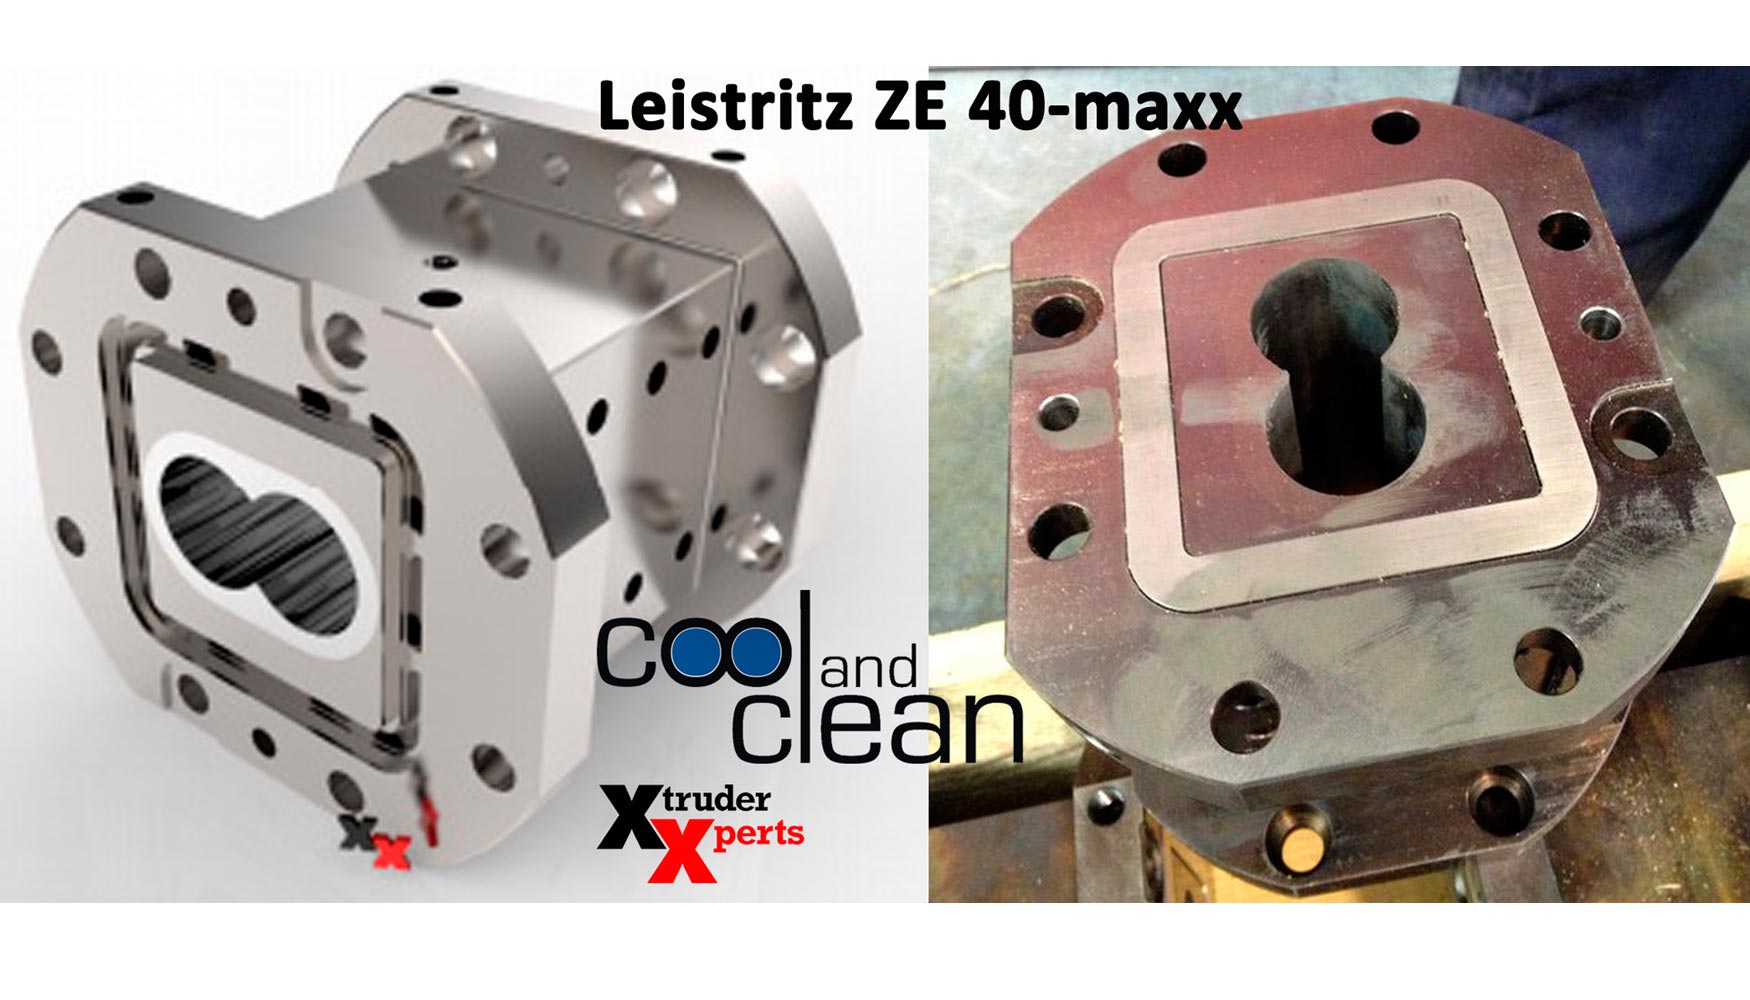 ZSE 40-MAXX con Liner y Cool&Clean